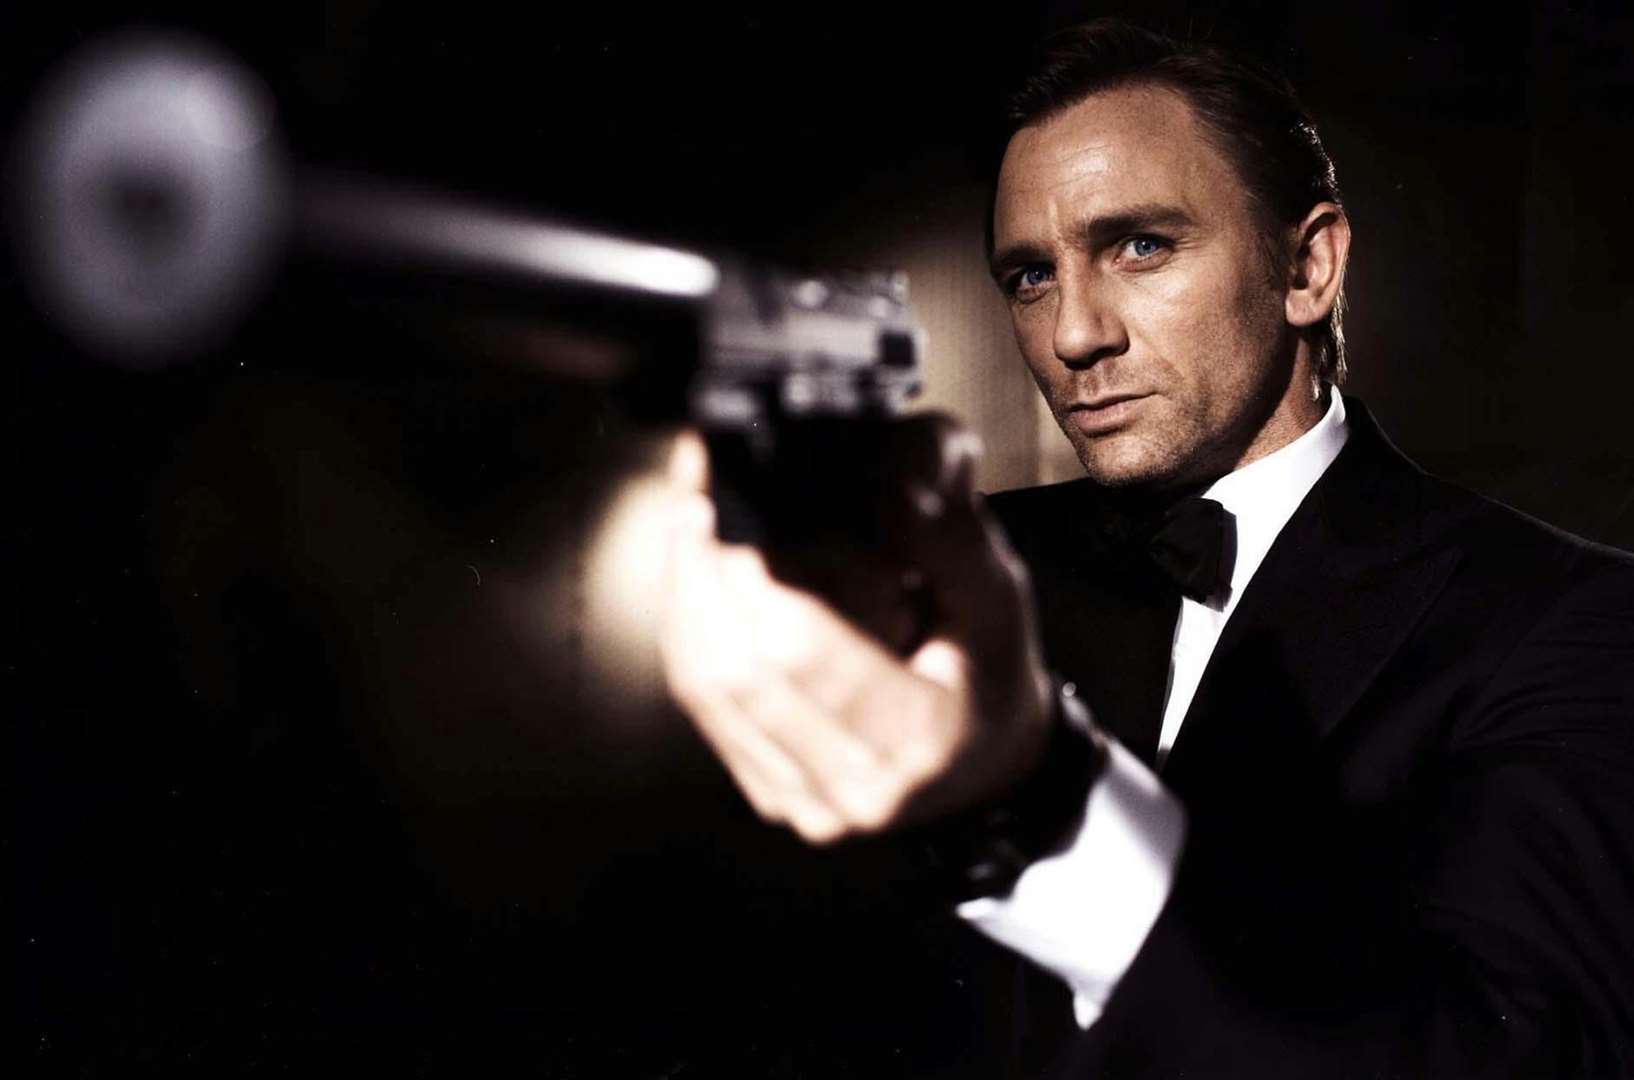 Daniel Craig is the current James Bond (EON Productions/PA)